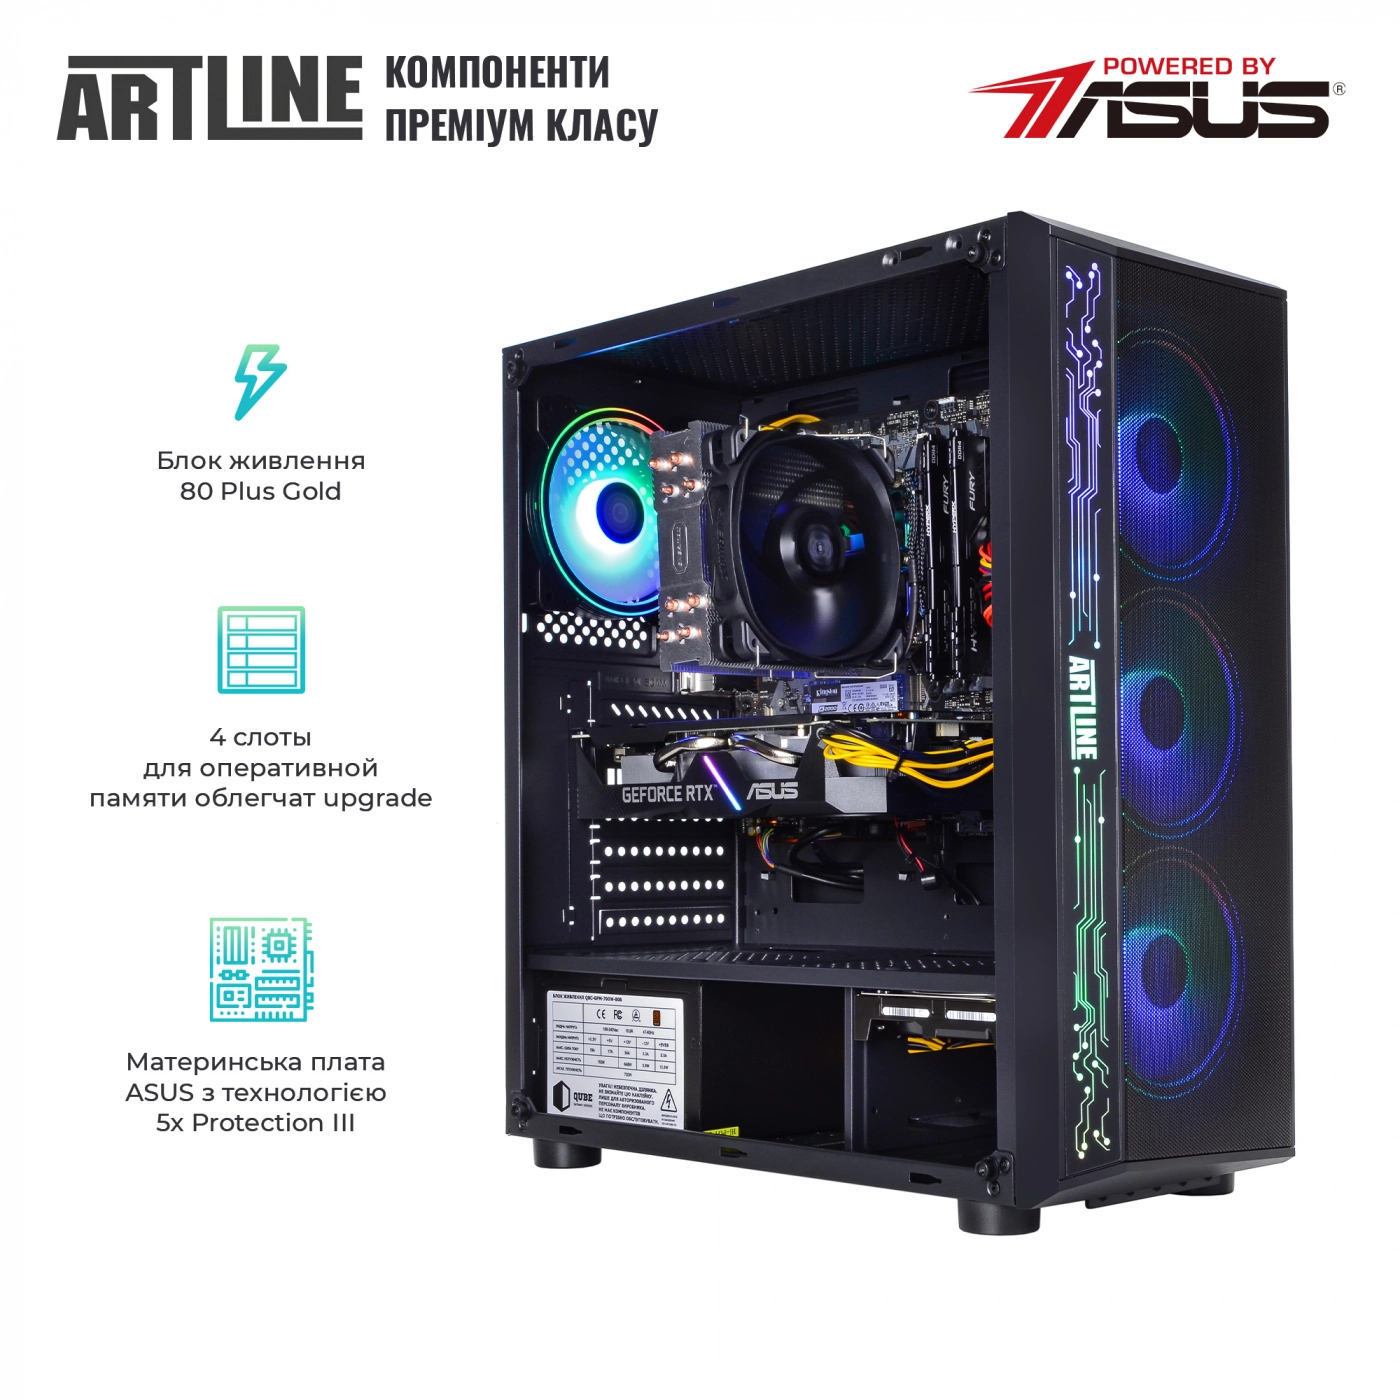 Купить Компьютер ARTLINE Gaming X76v02 - фото 2